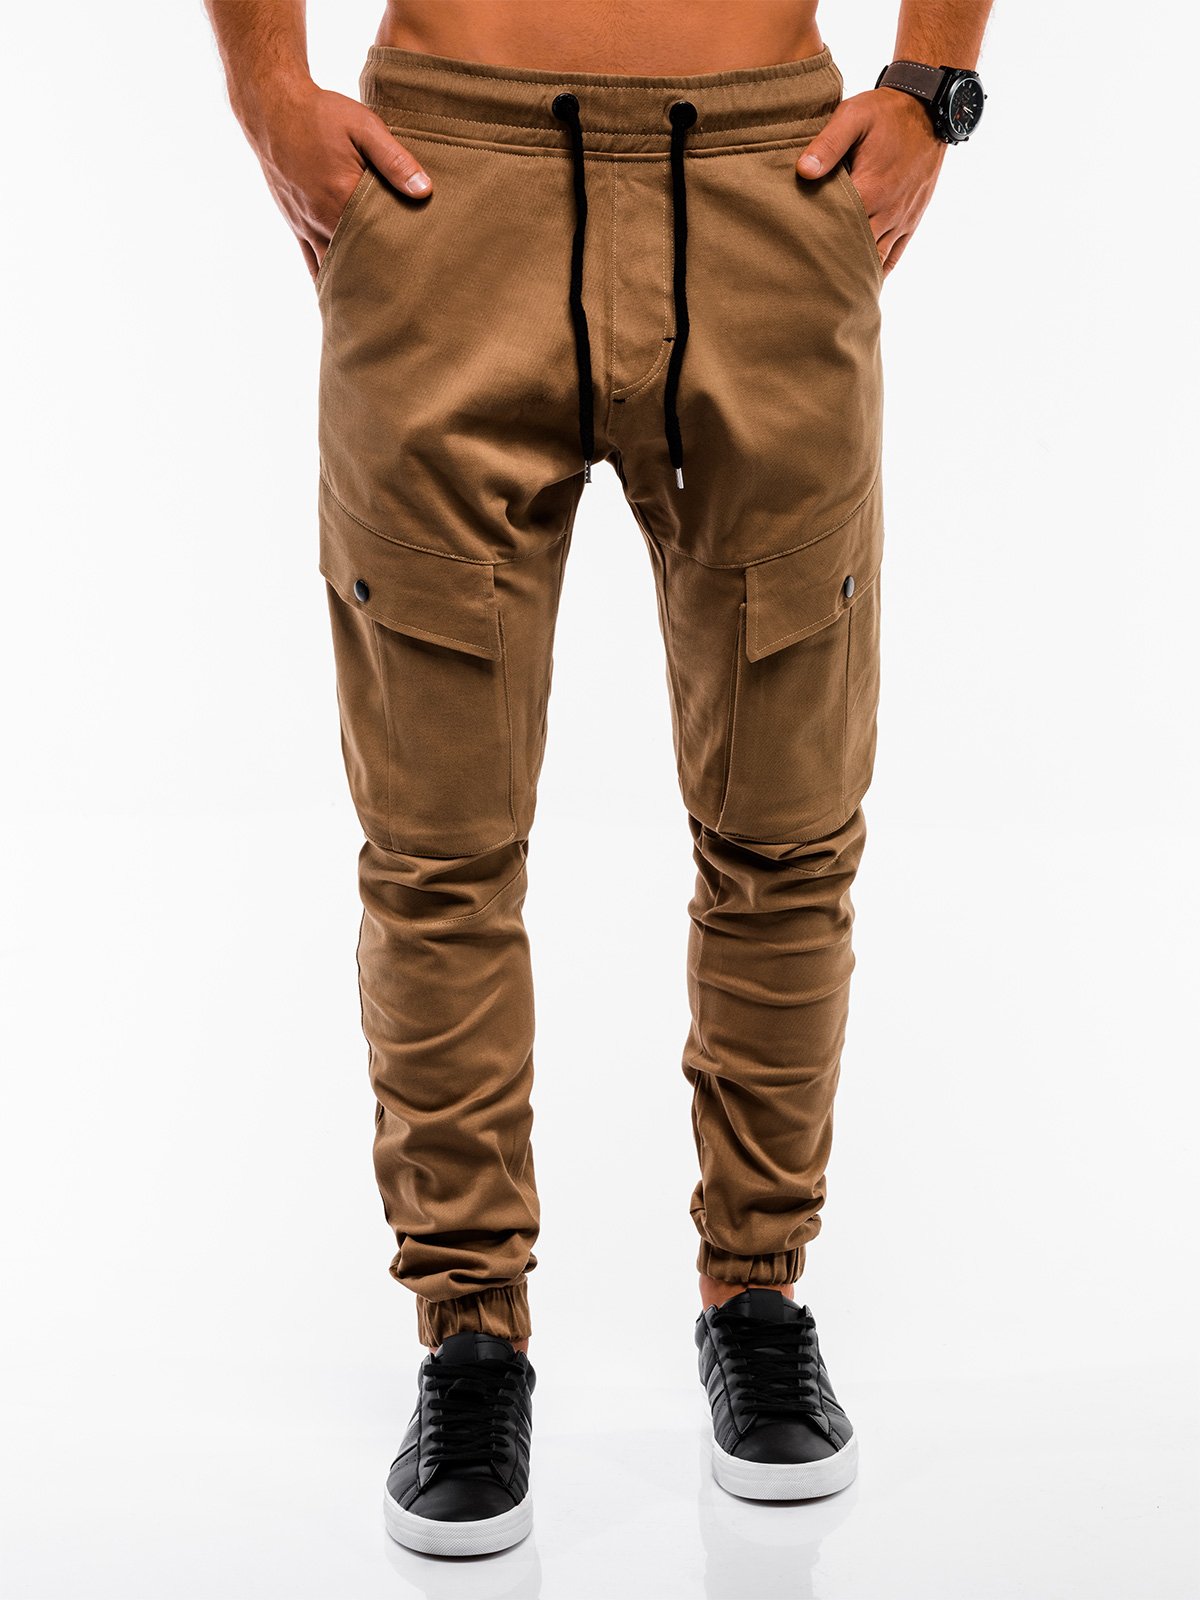 Men's pants joggers P707 - camel | MODONE wholesale - Clothing For Men